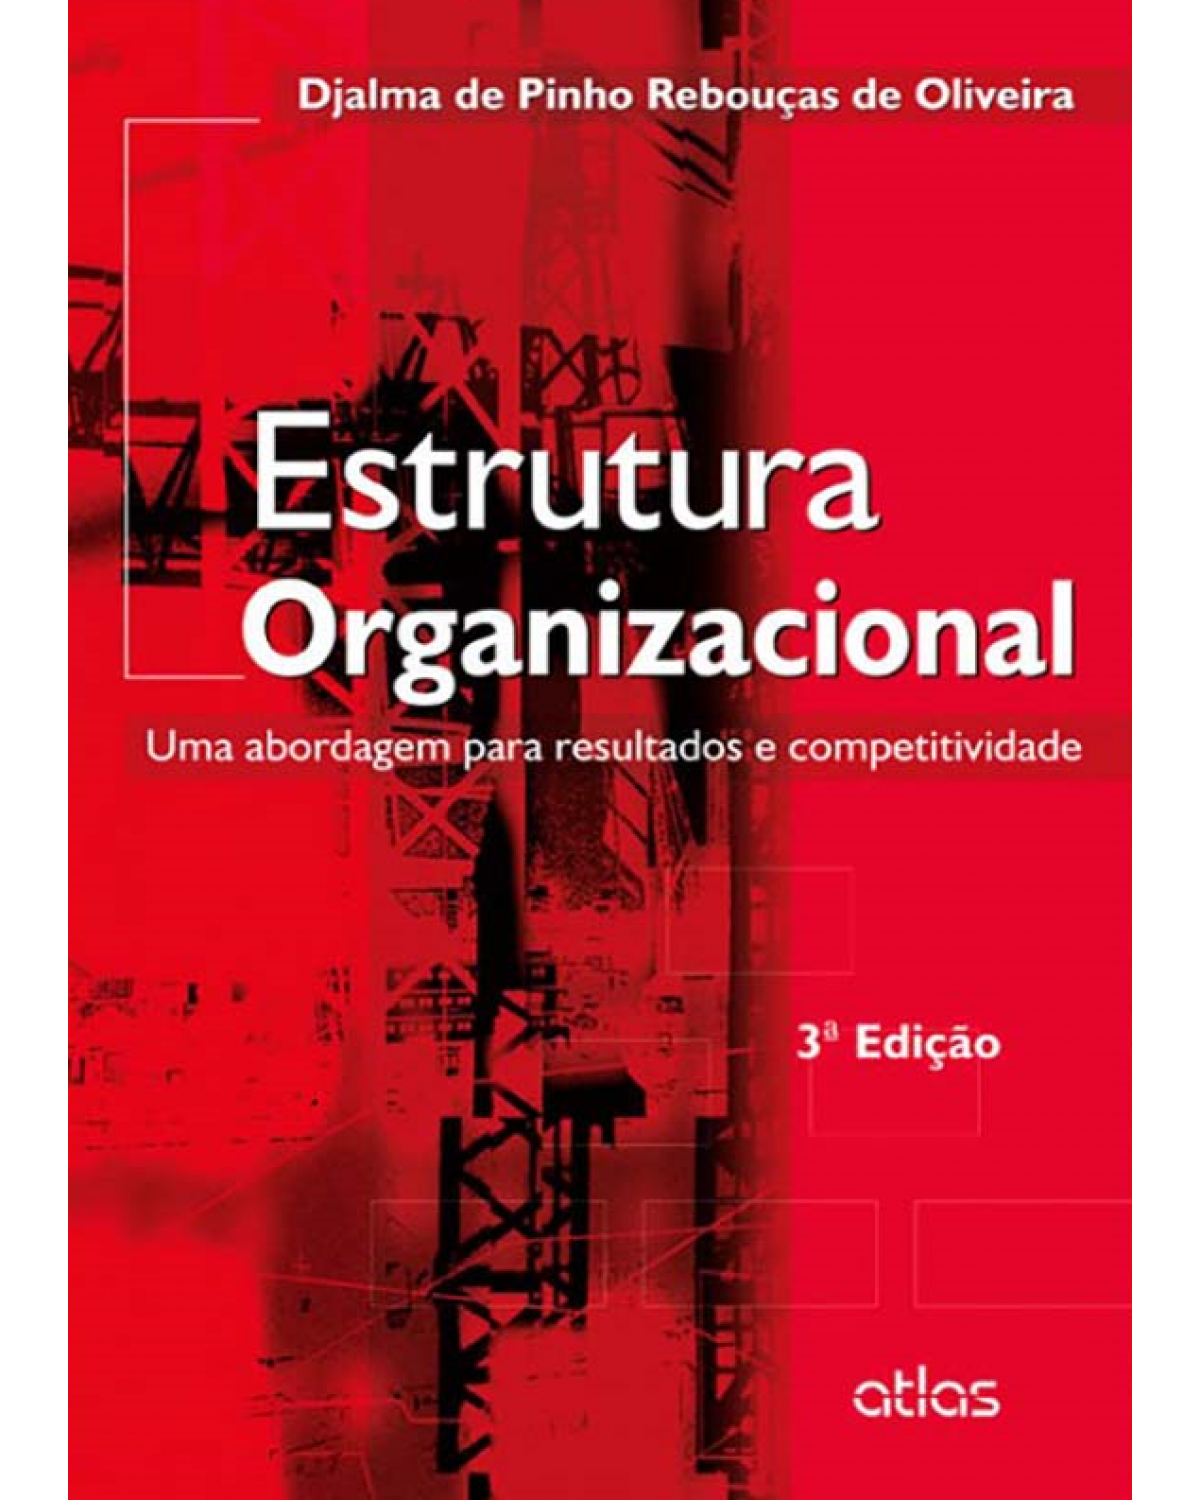 Estrutura organizacional - Uma abordagem para resultados e competitividade - 3ª Edição | 2014